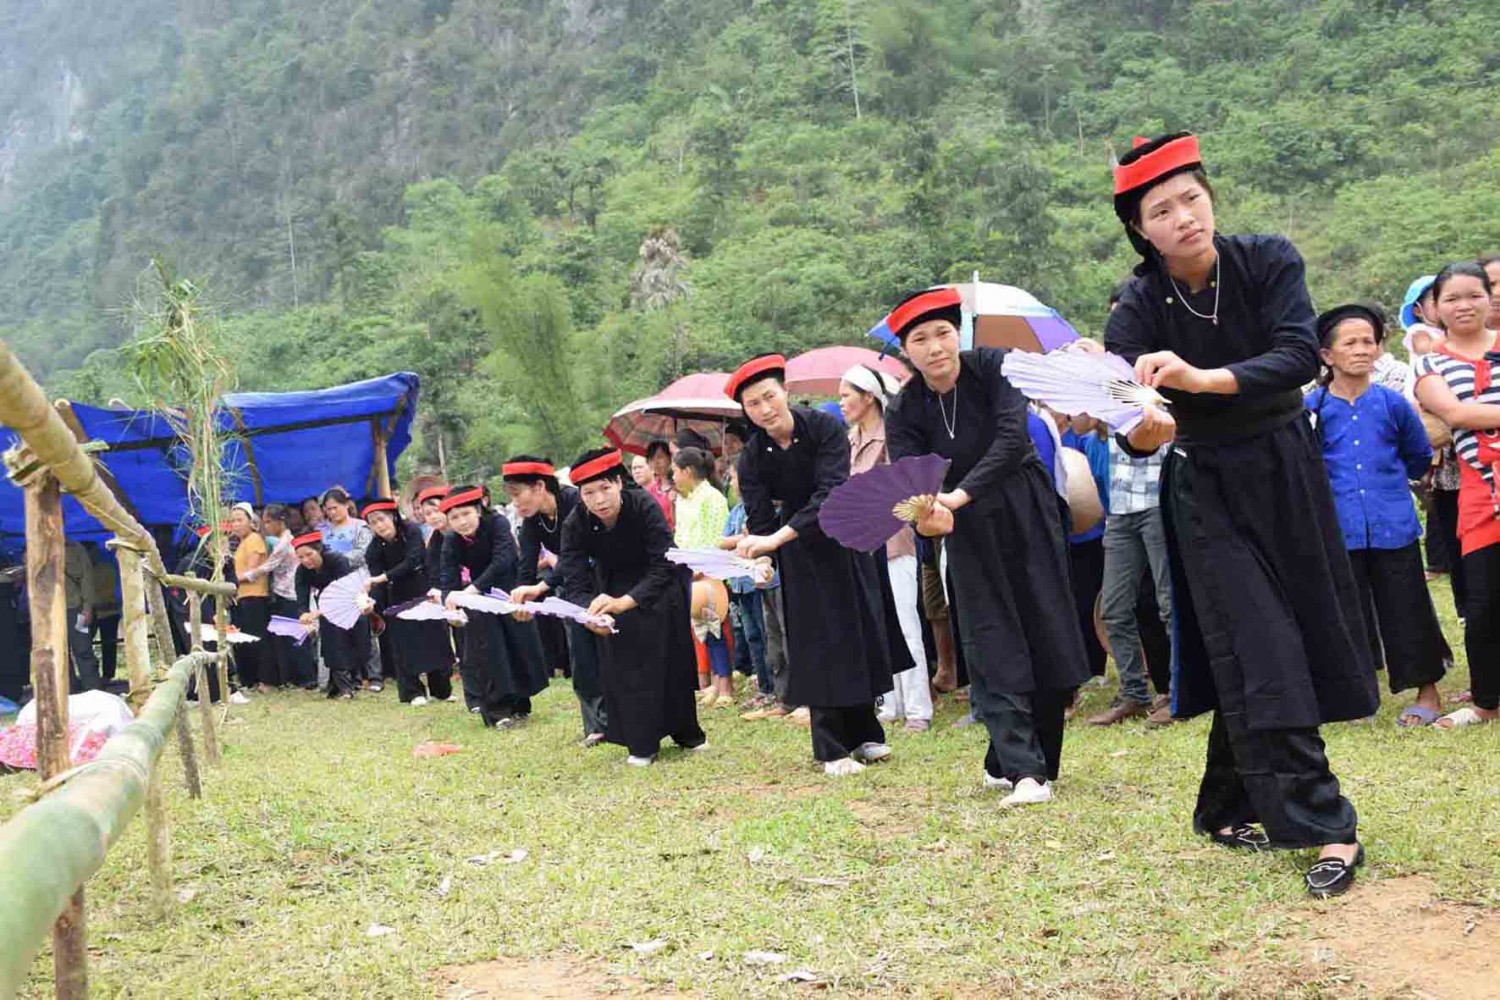 Điệu múa quét trong lễ hội cầu mùa thôn Chu Lăng, xã Kim Đồng, huyện Thạch An. Ảnh: Chu Đức Hòa